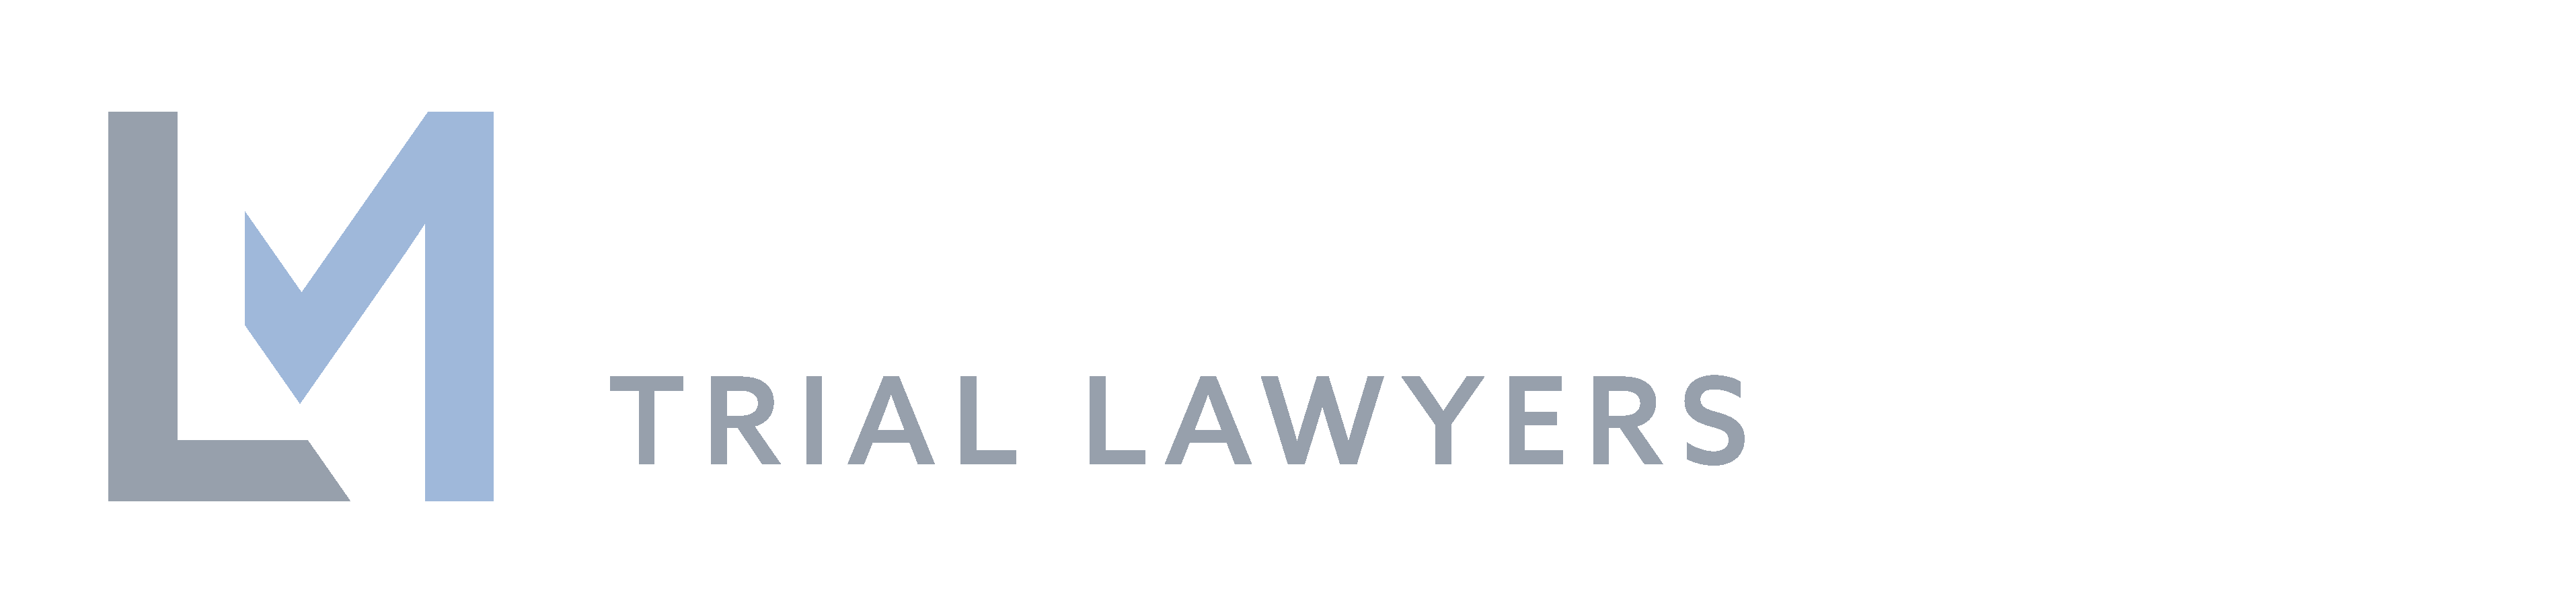 LIGHT & MILLER, LLP | Trial Attorneys